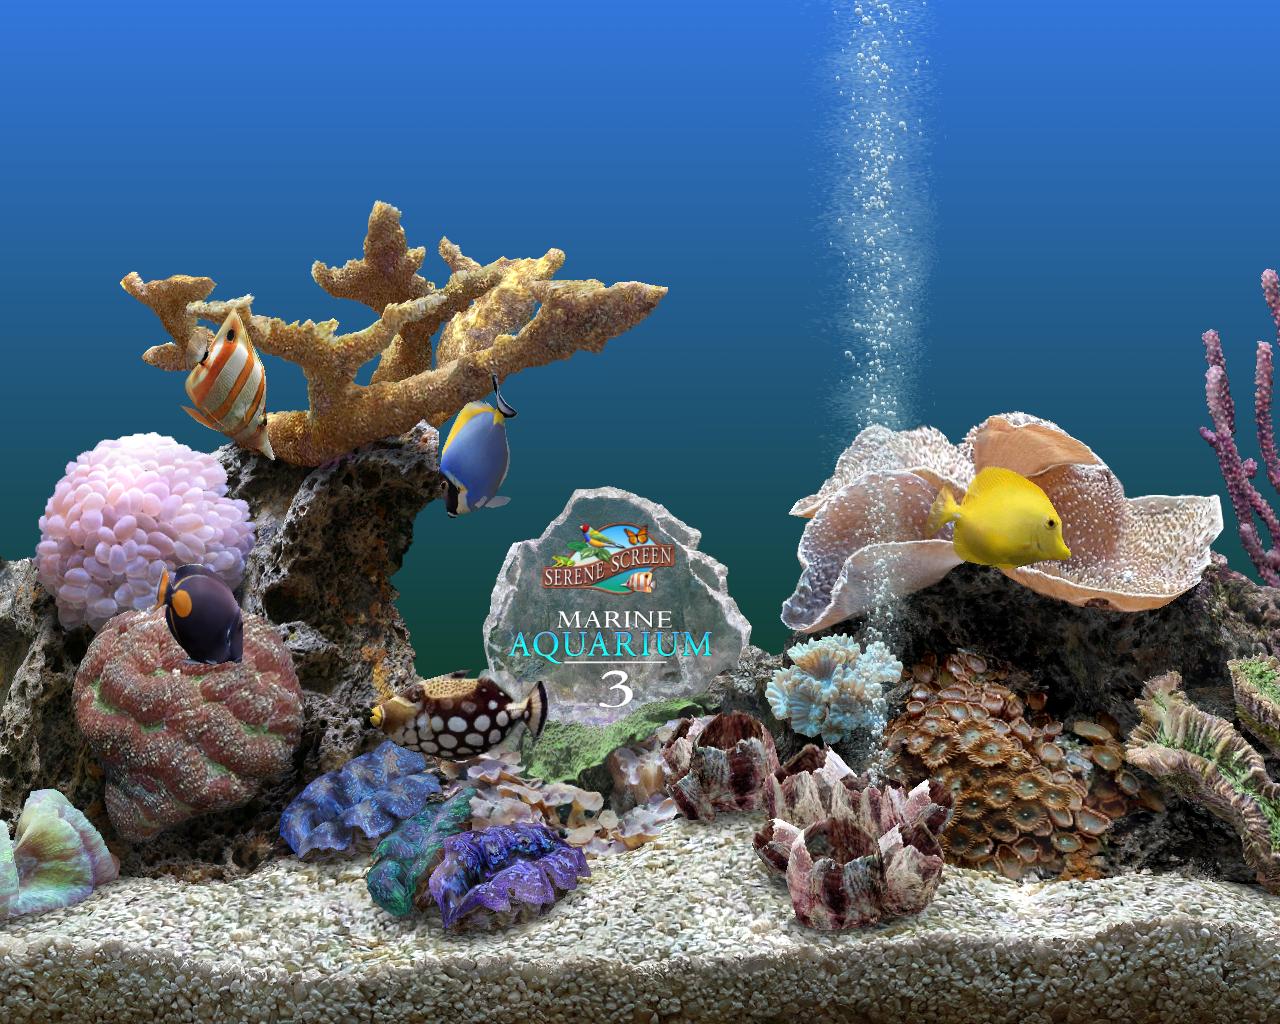 marine aquarium screen saver